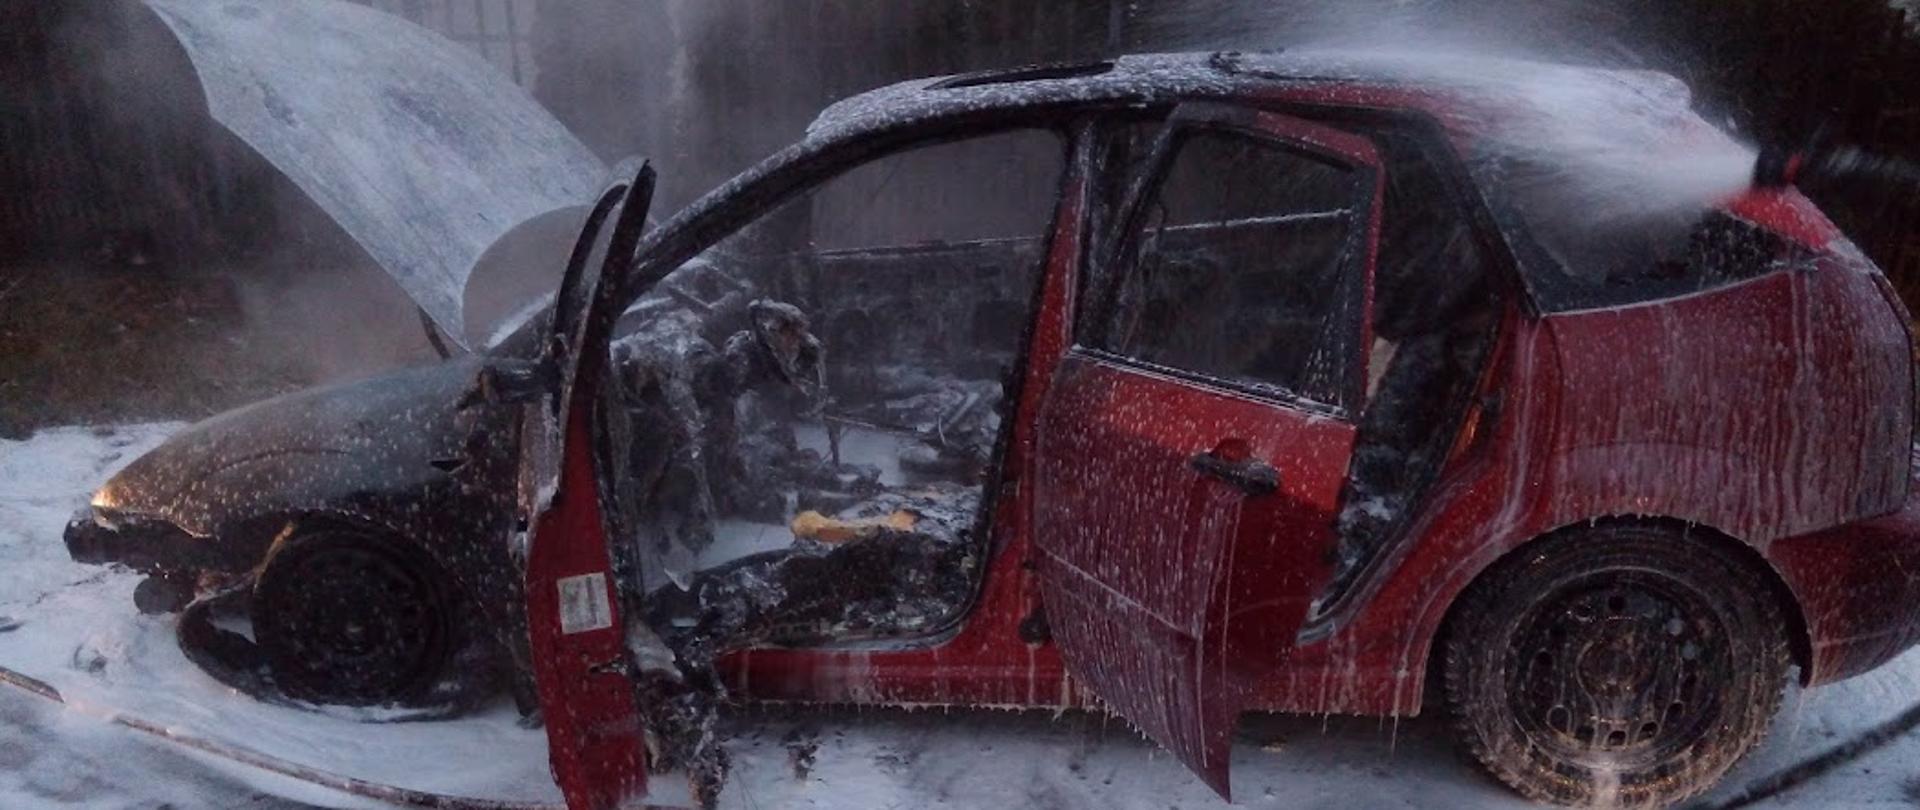 Zdjęcie przedstawia spalony samochód koloru czerwonego gaszony pianą ciężką 